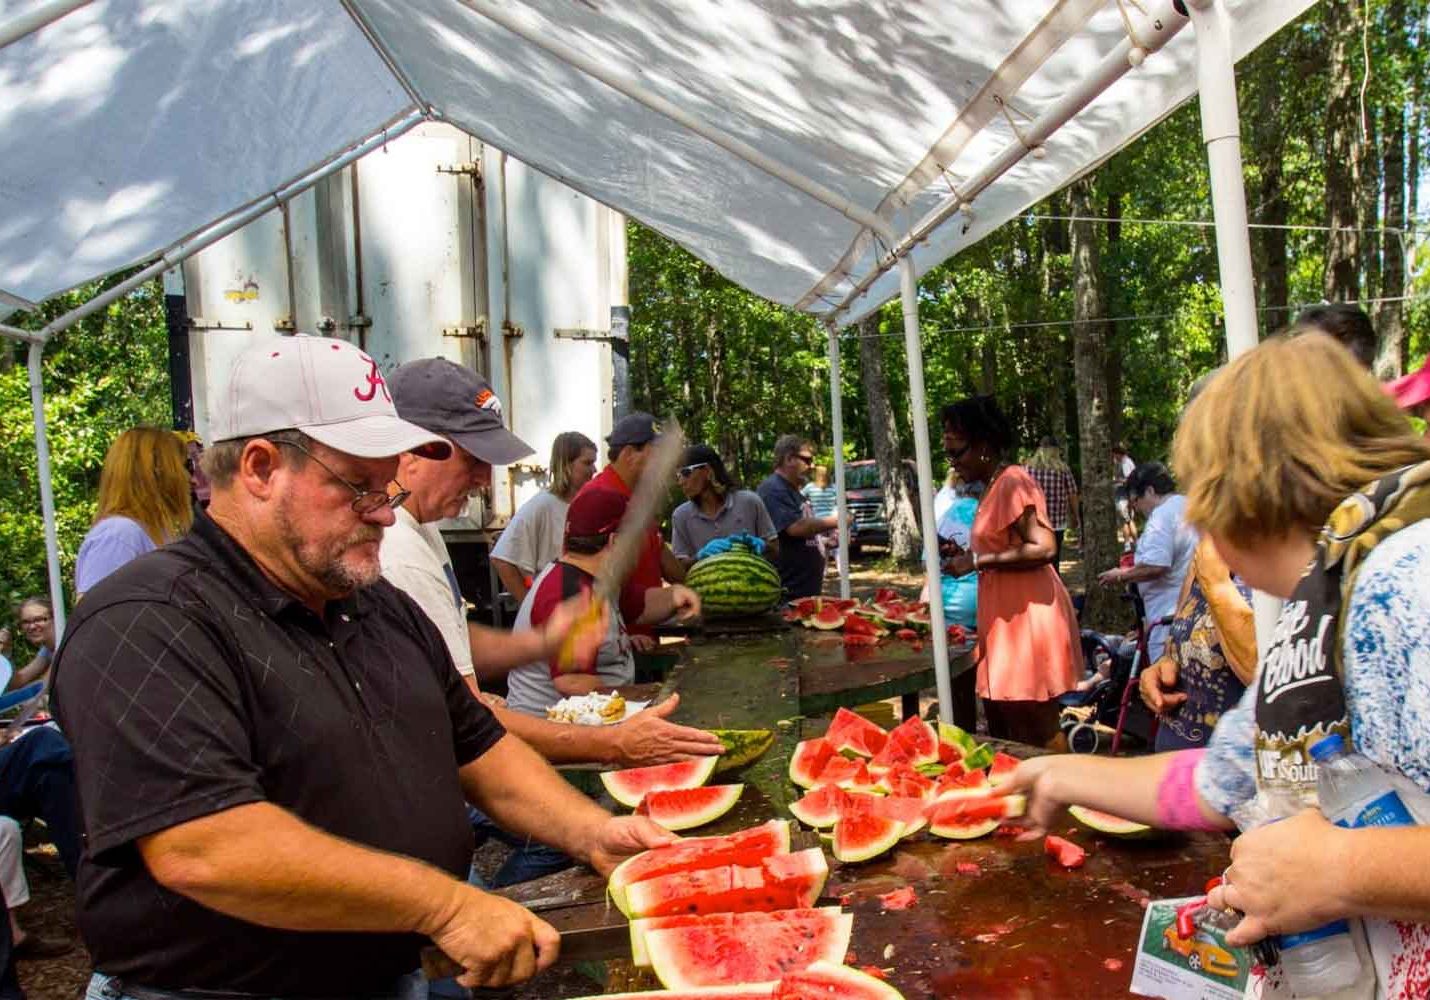 Grand Bay Watermelon Festival Announced